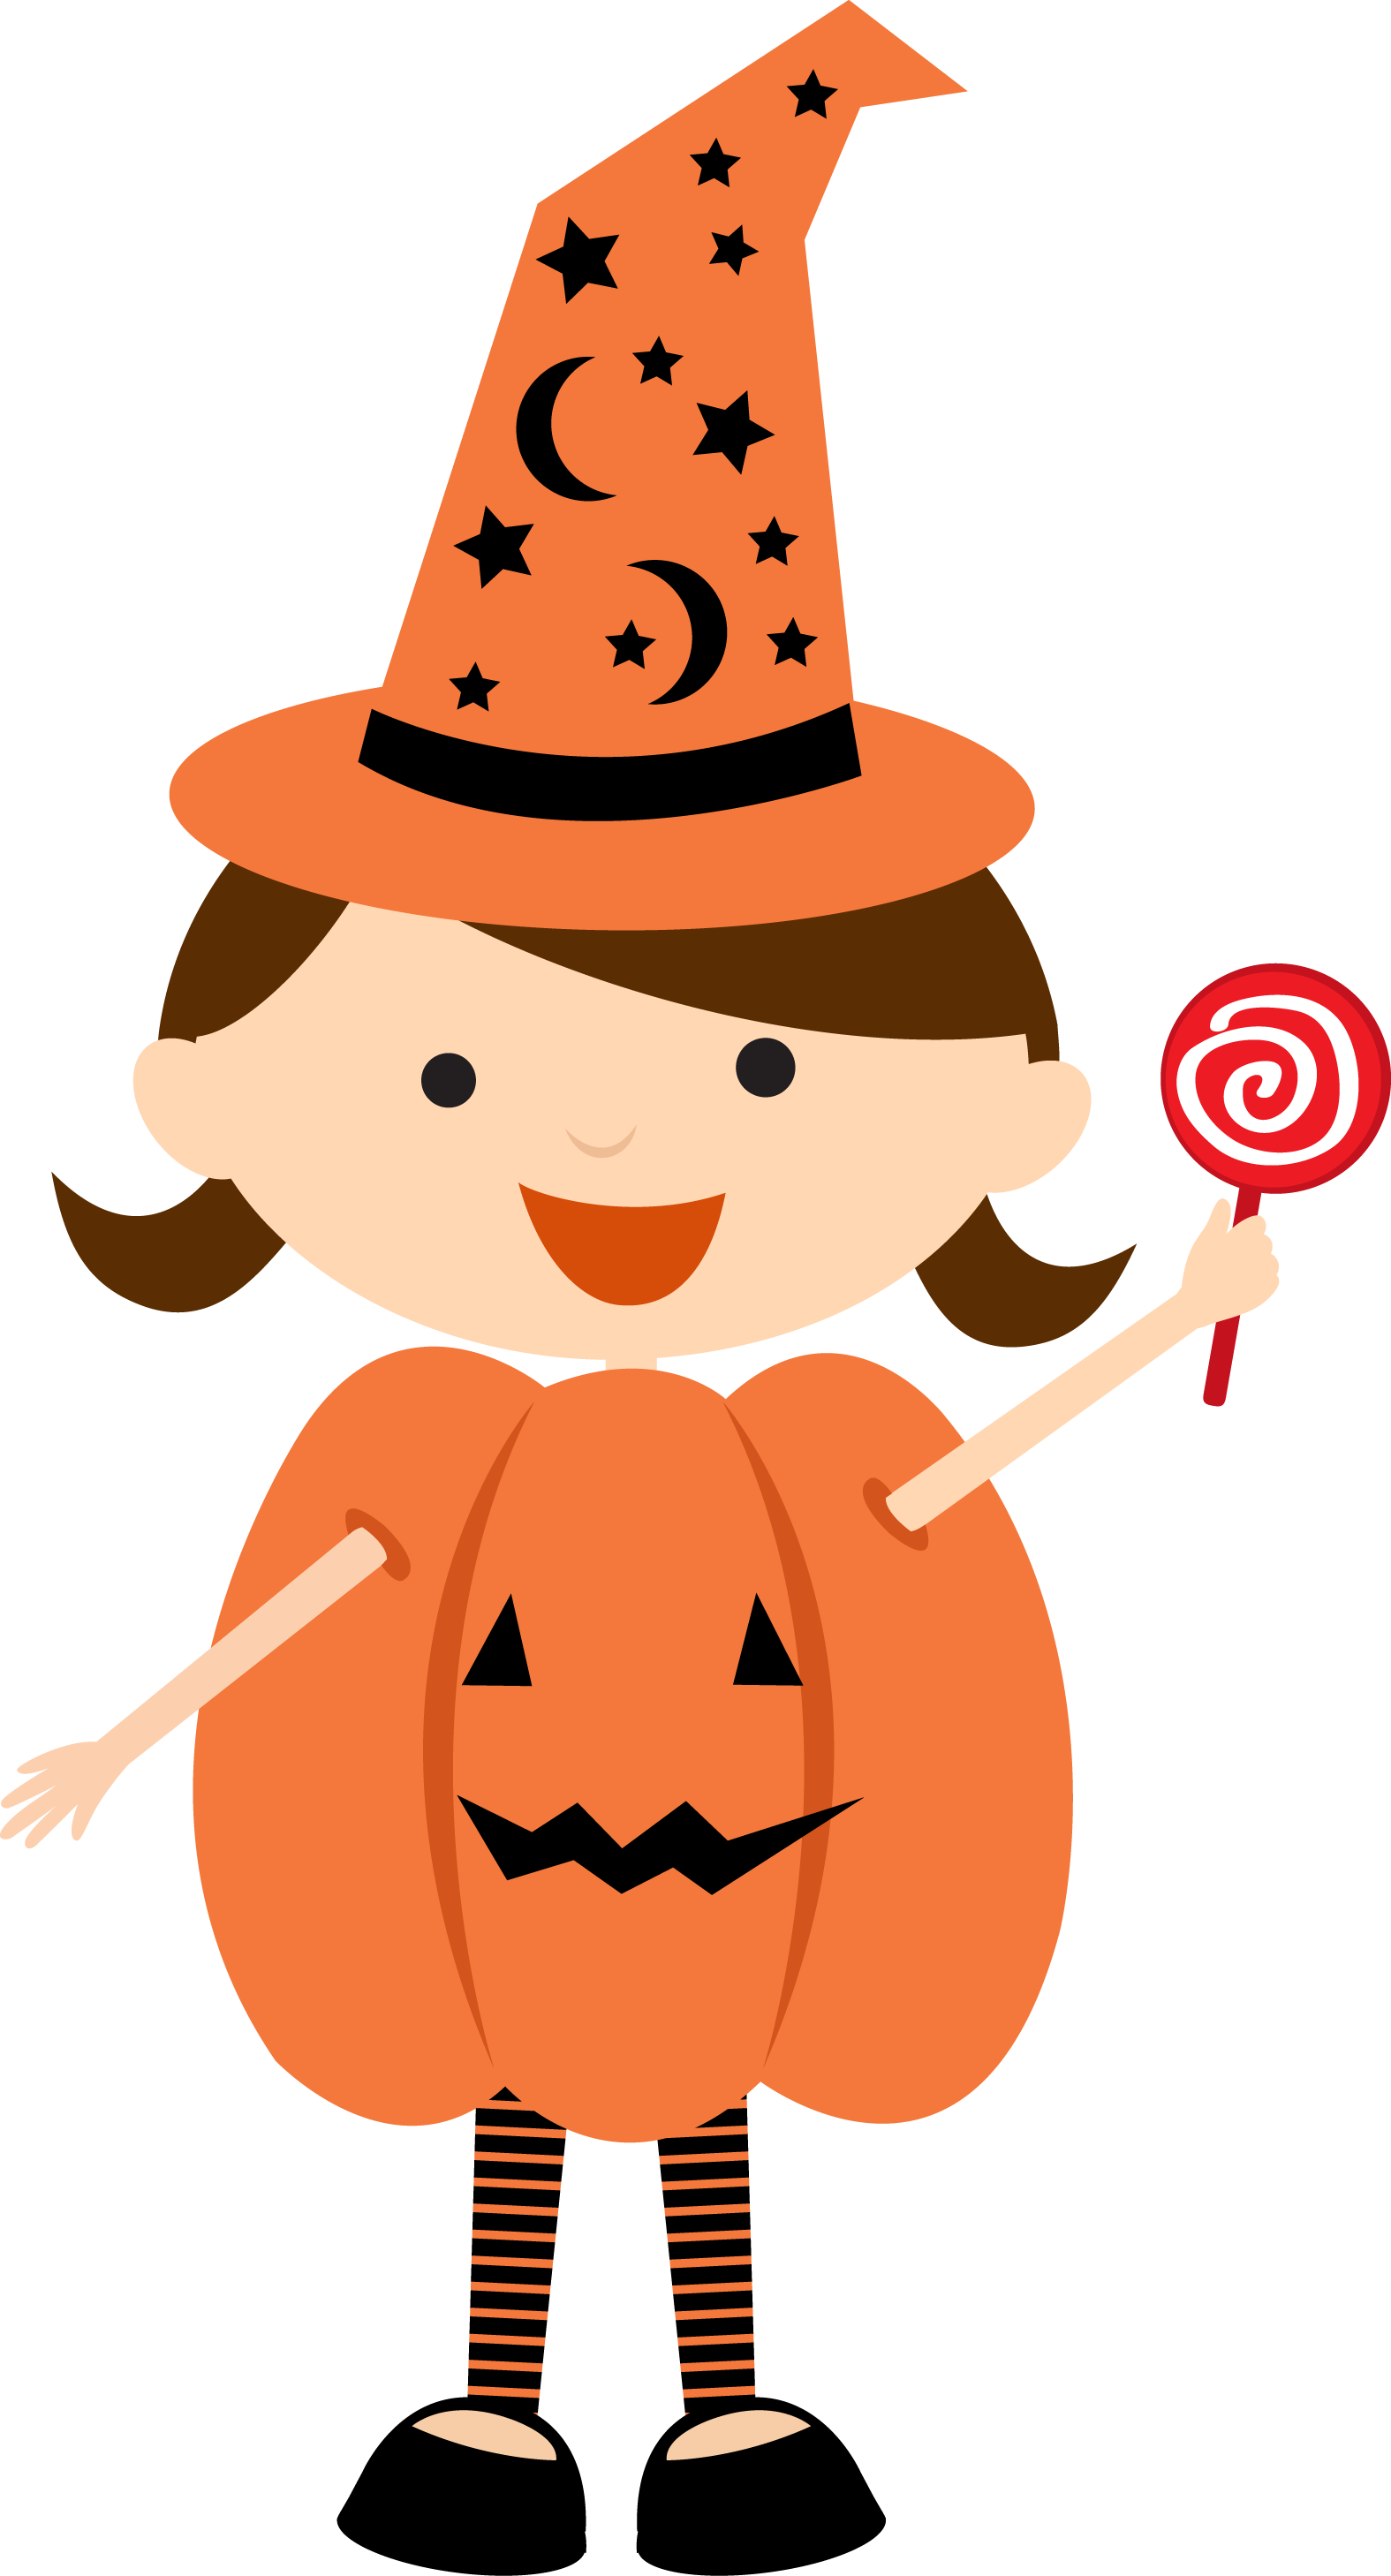 A Cartoon Of A Girl In A Pumpkin Garment Holding A Lollipop